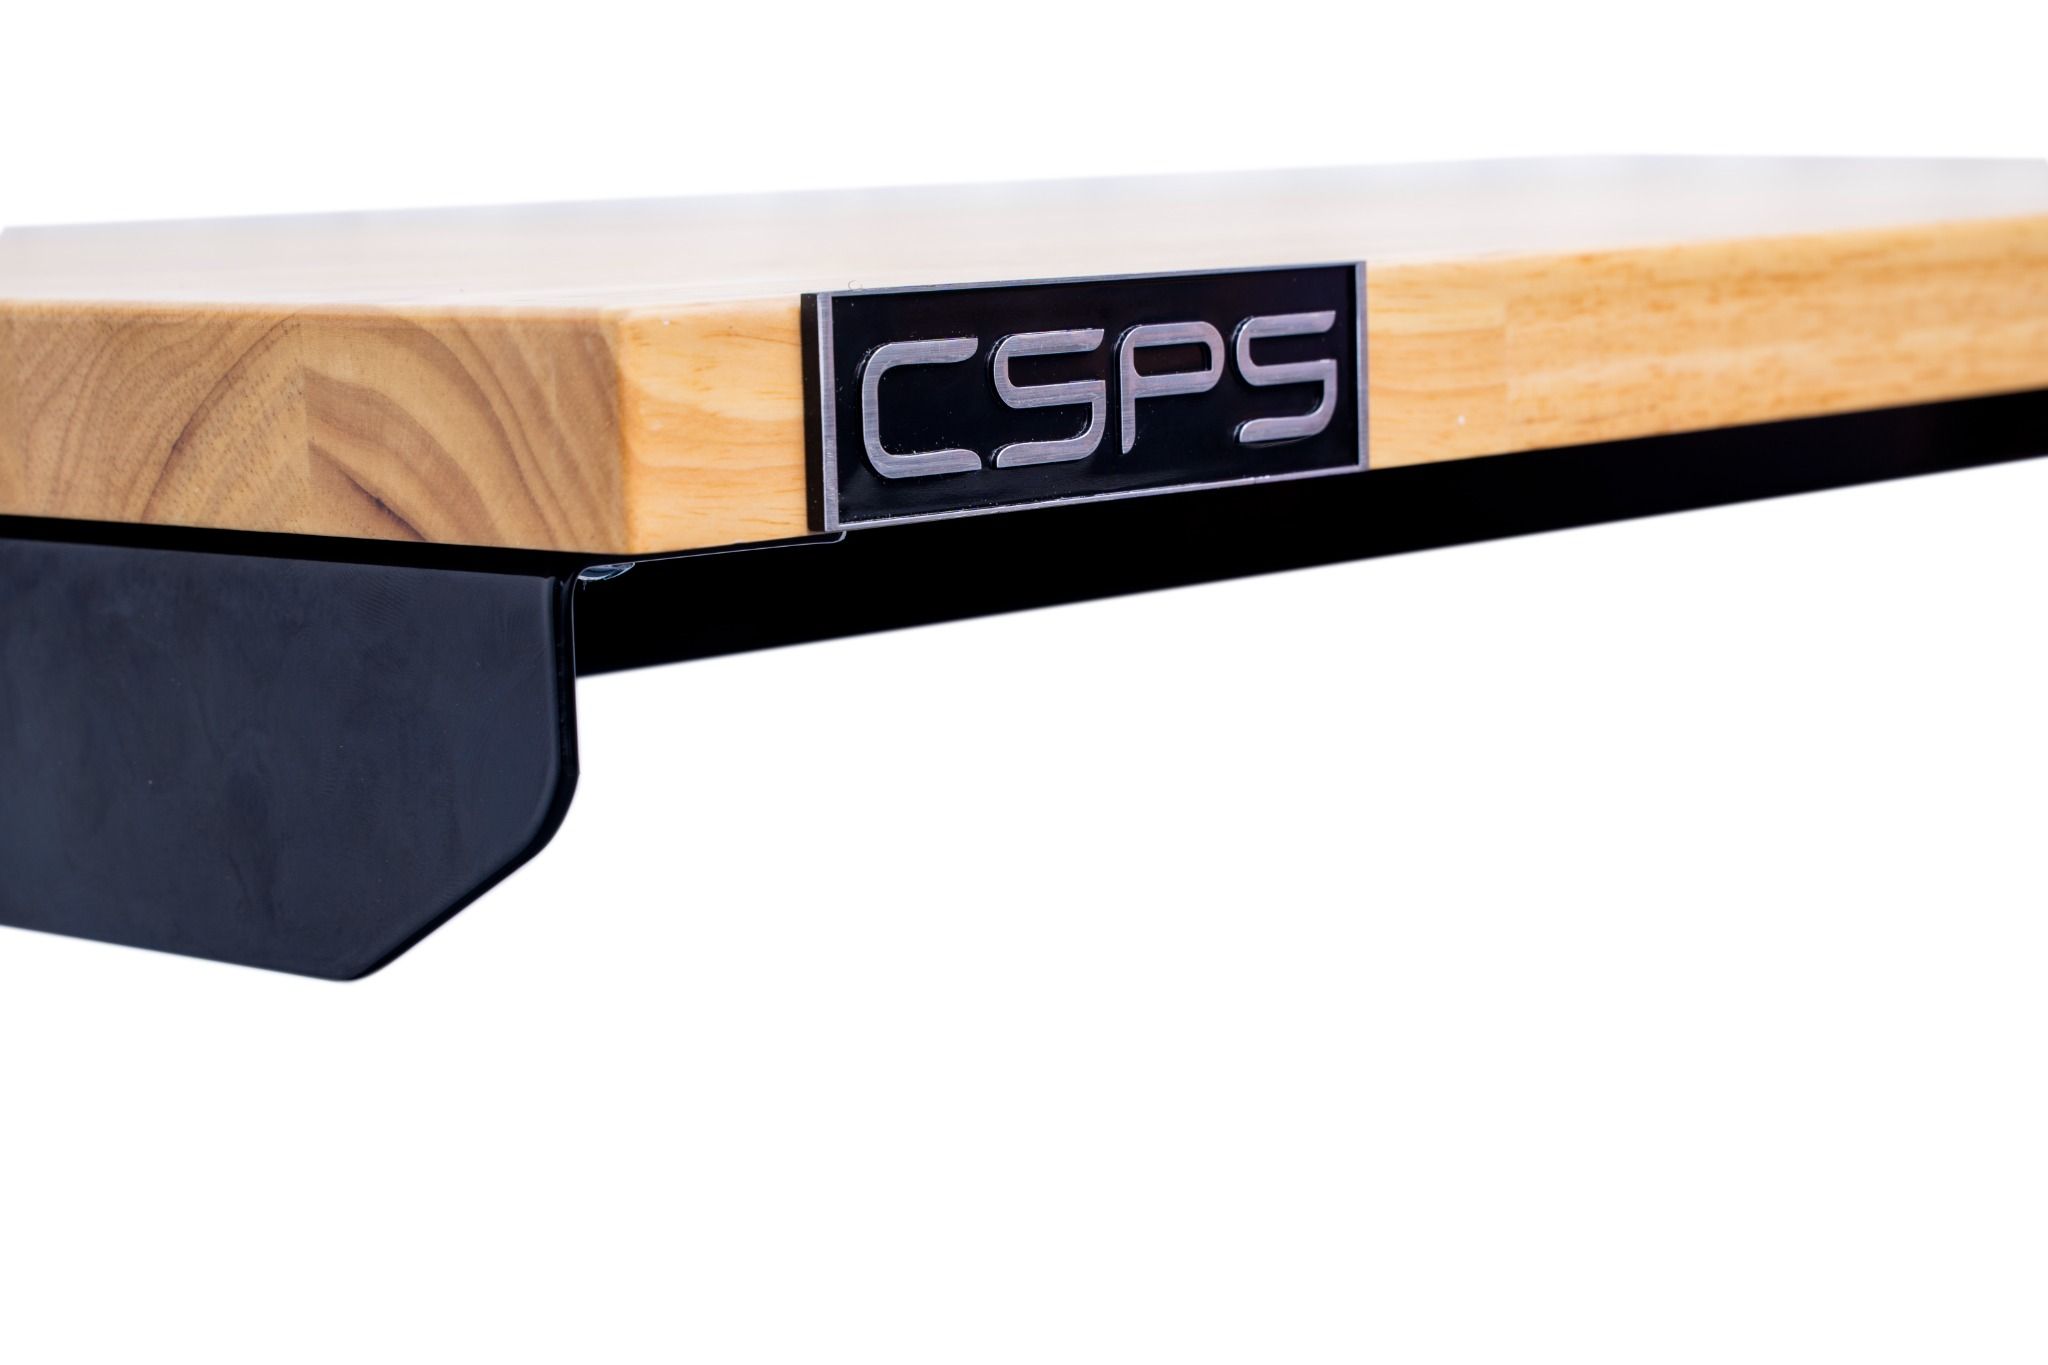  Bàn điều chỉnh độ cao CSPS 117cm - 132cm - 157cm 